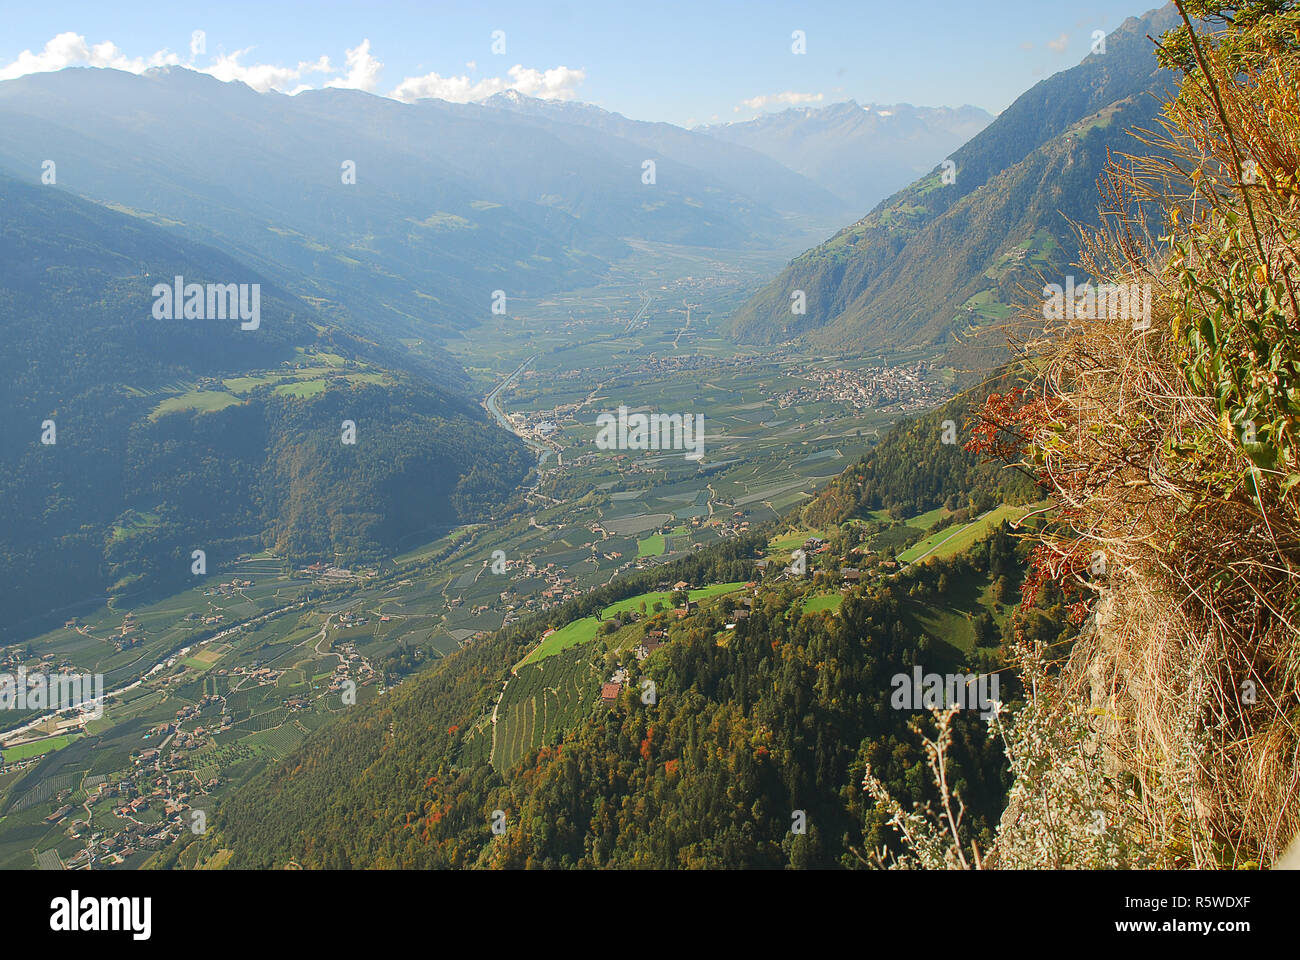 Vue panoramique sur les vallées et les montagnes (Texel) dans les Alpes italiennes debout à la station de téléphérique Hochmuth (Meran, le Tyrol du Sud, Italie) Banque D'Images